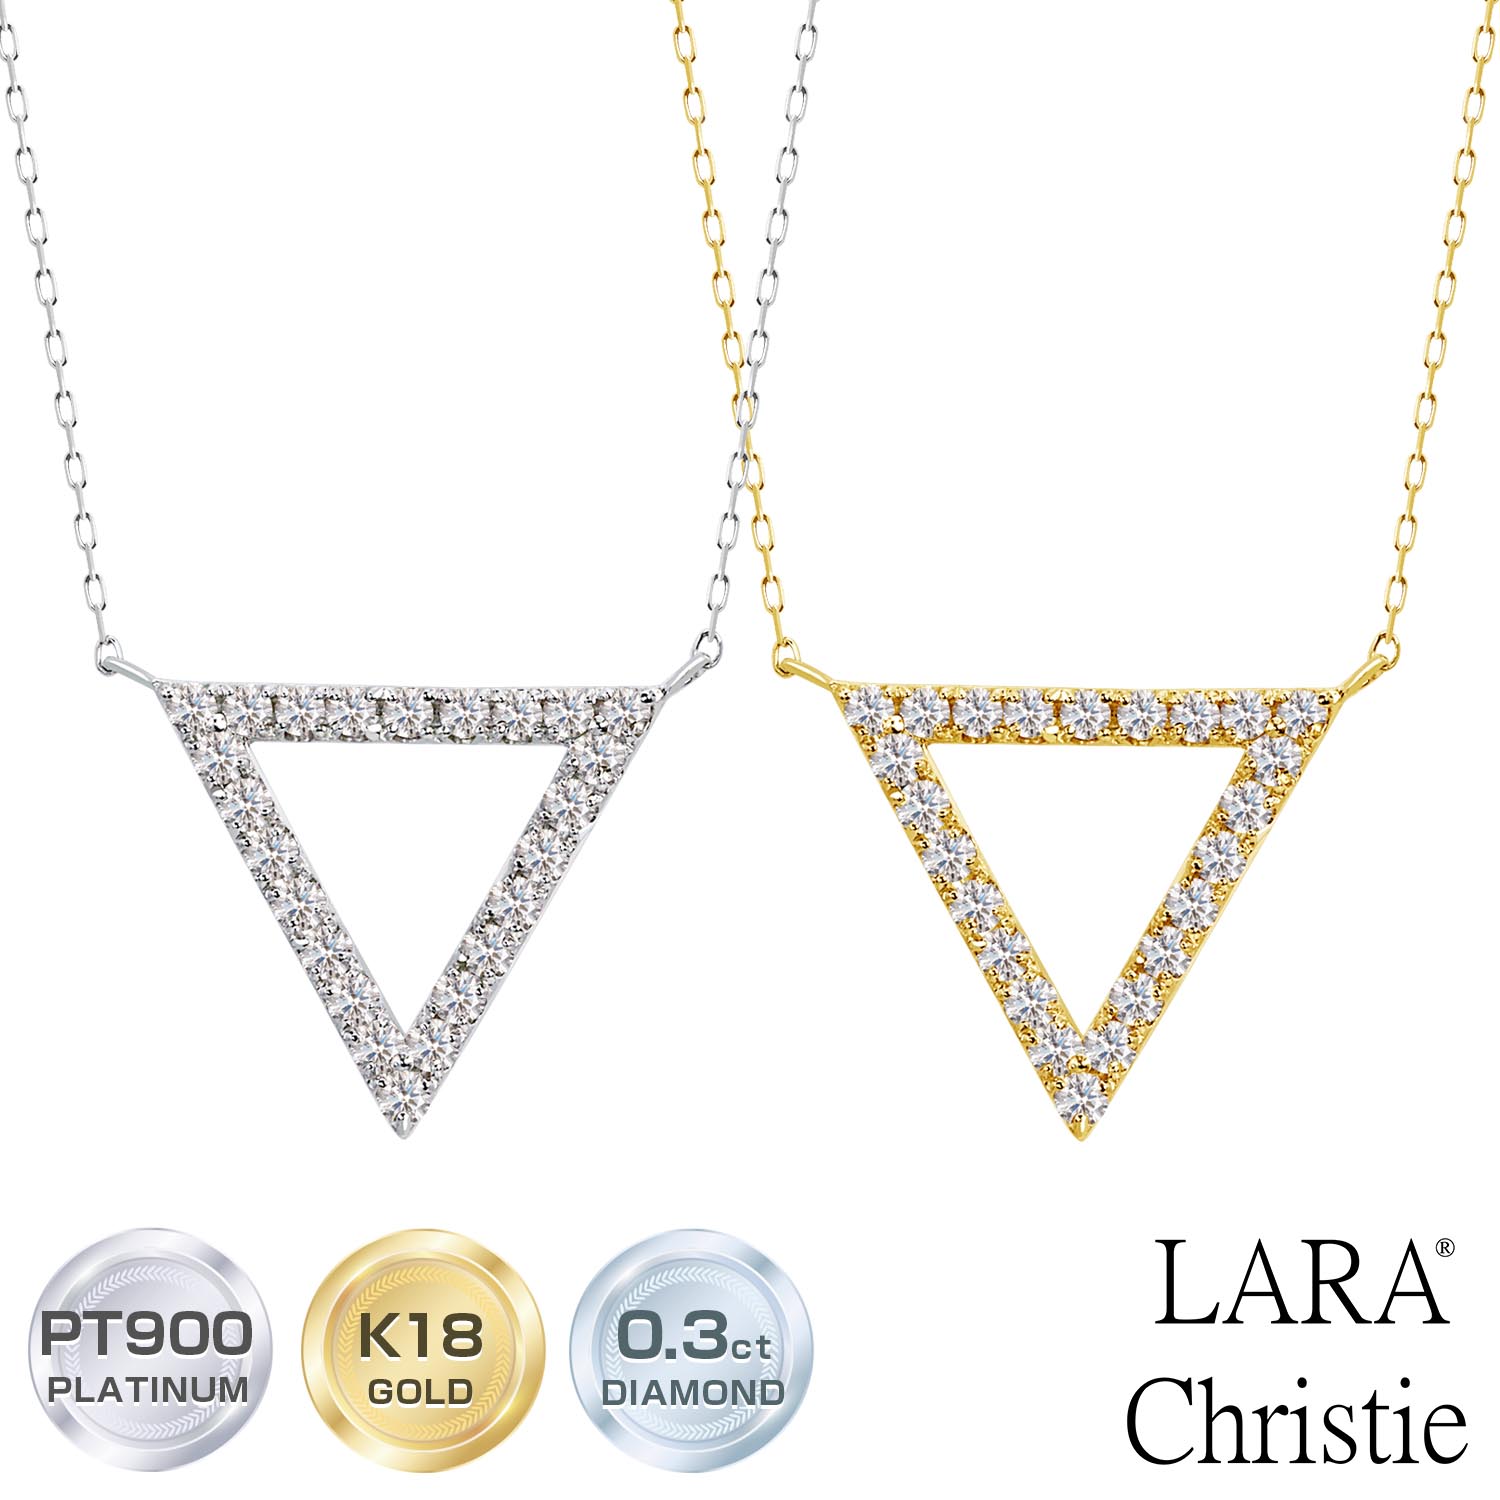 ララクリスティー ネックレス レディース トライアングル ダイヤモンド 0.3ct SIクラス相当 プラチナ PT900 K18 18金 ララクリスティー lp37-0006 LARA Christie 女性 誕生日プレゼント